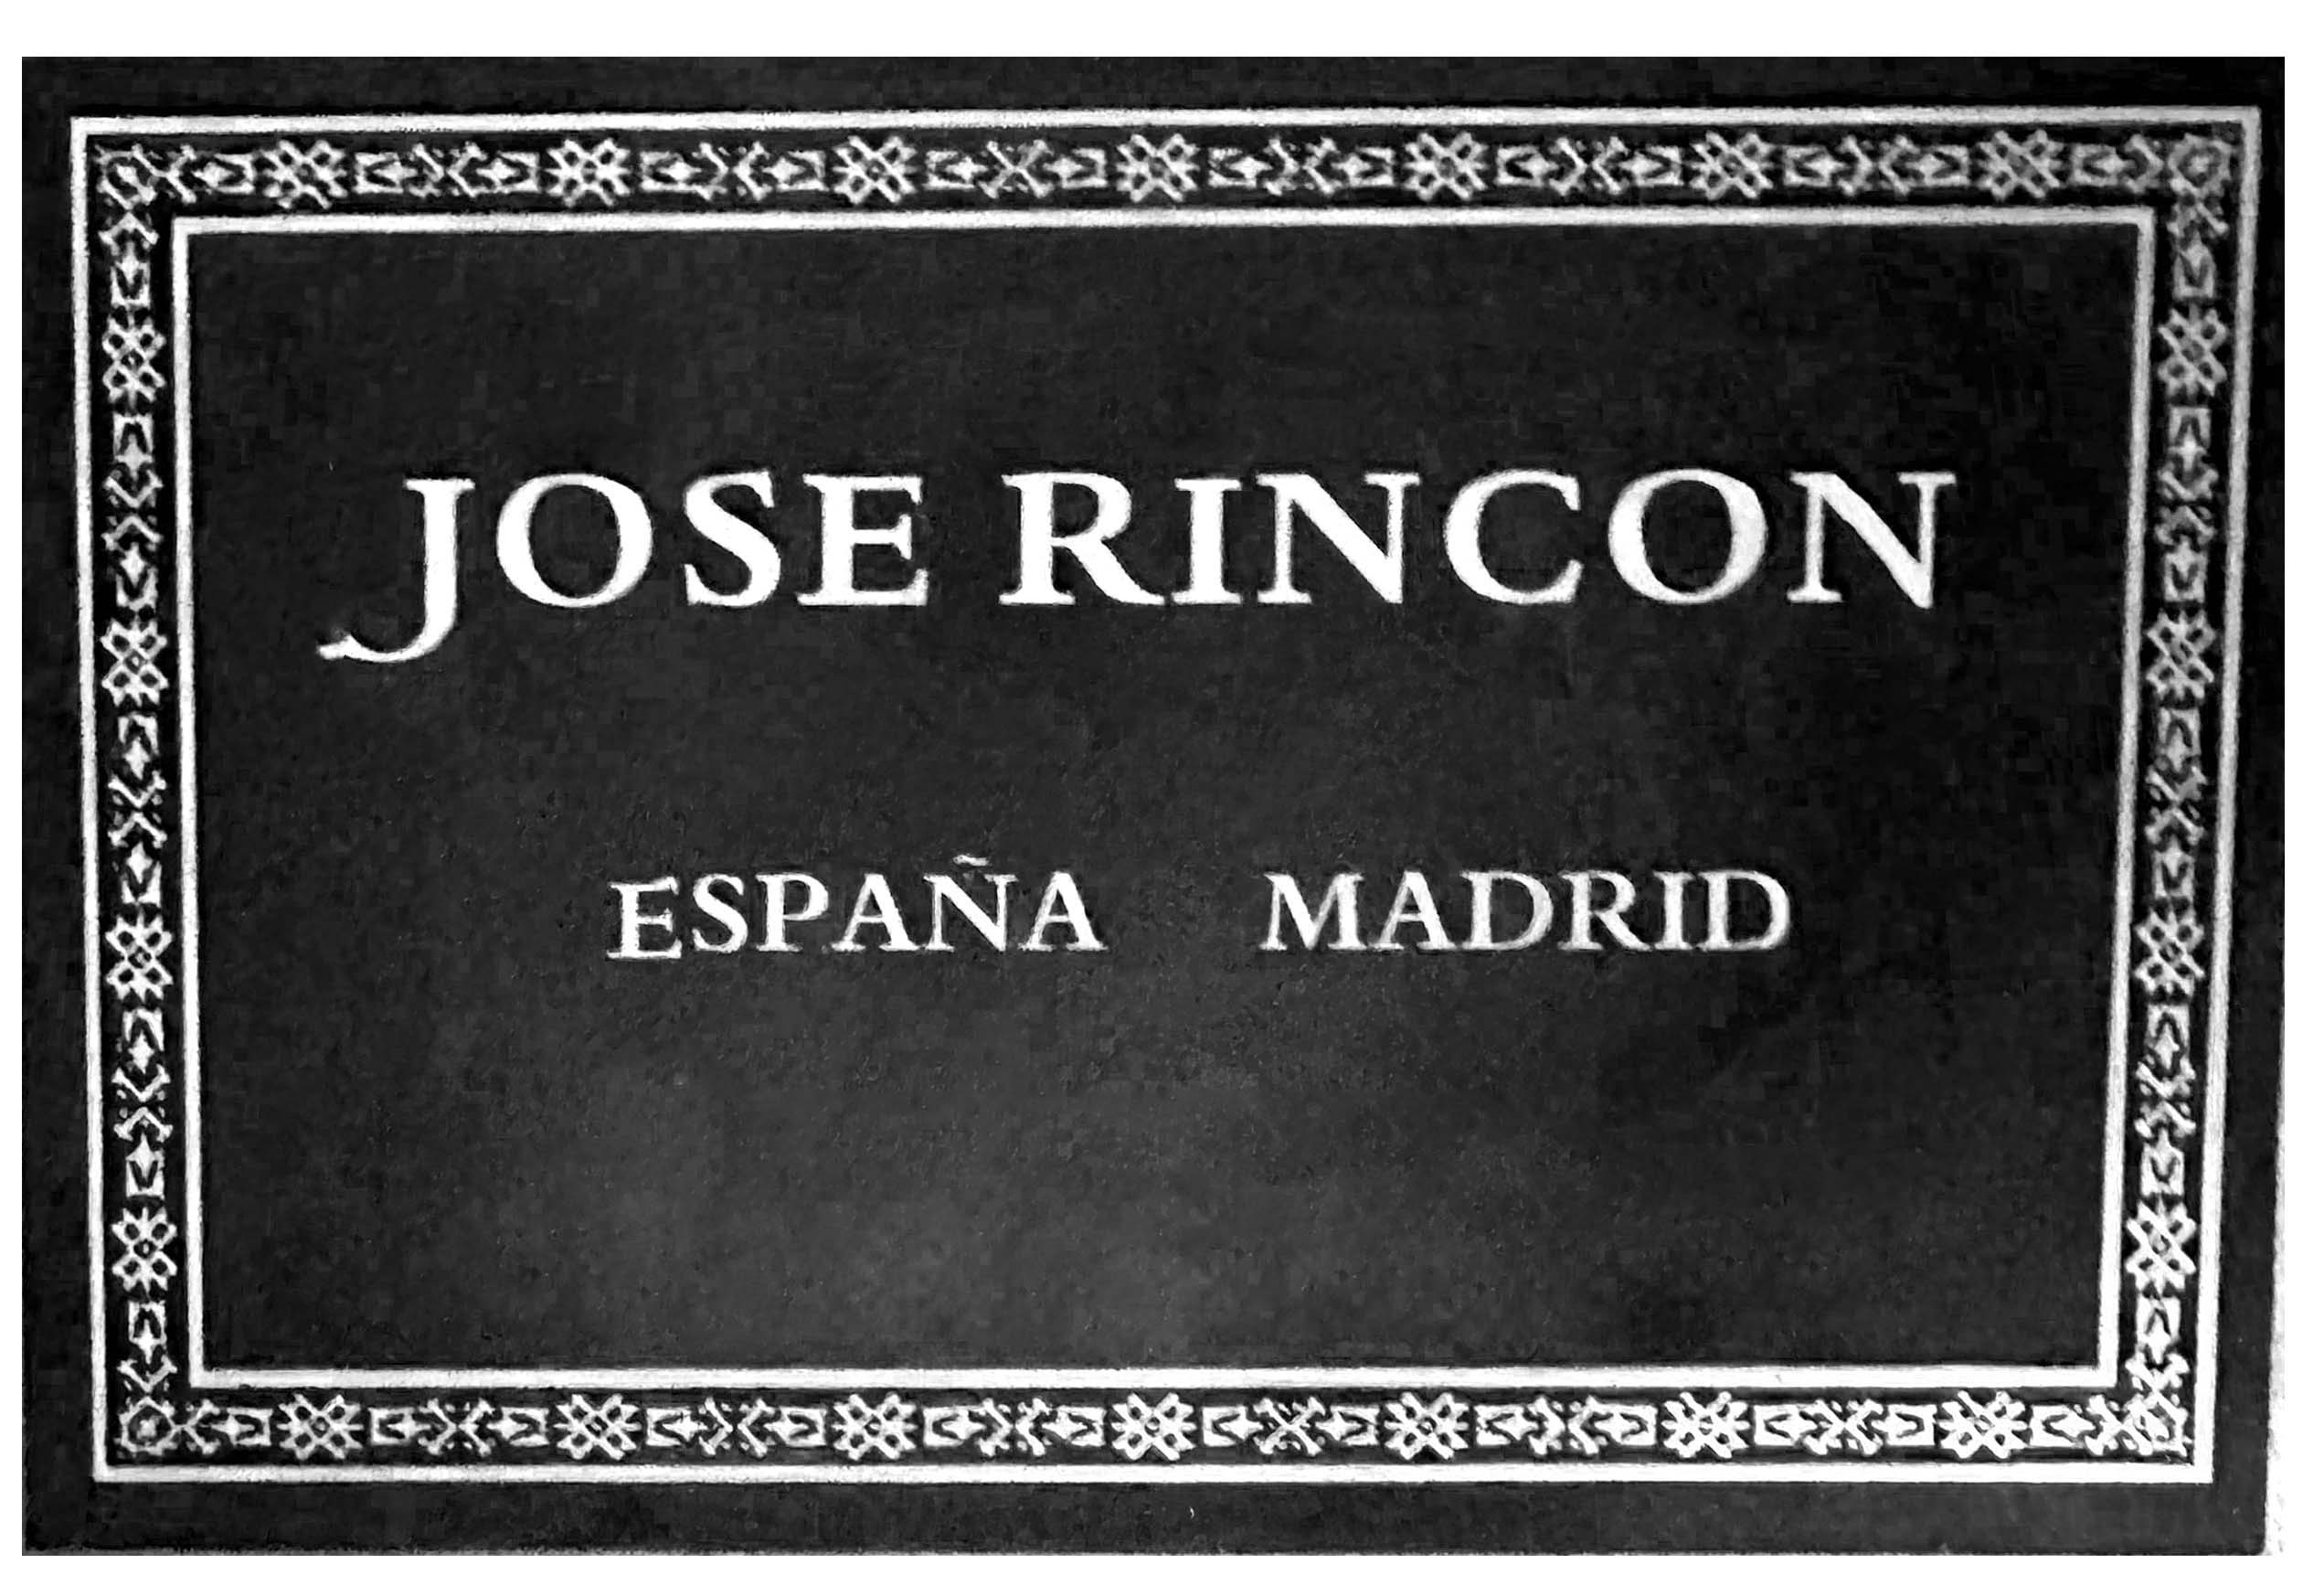 José Rincón